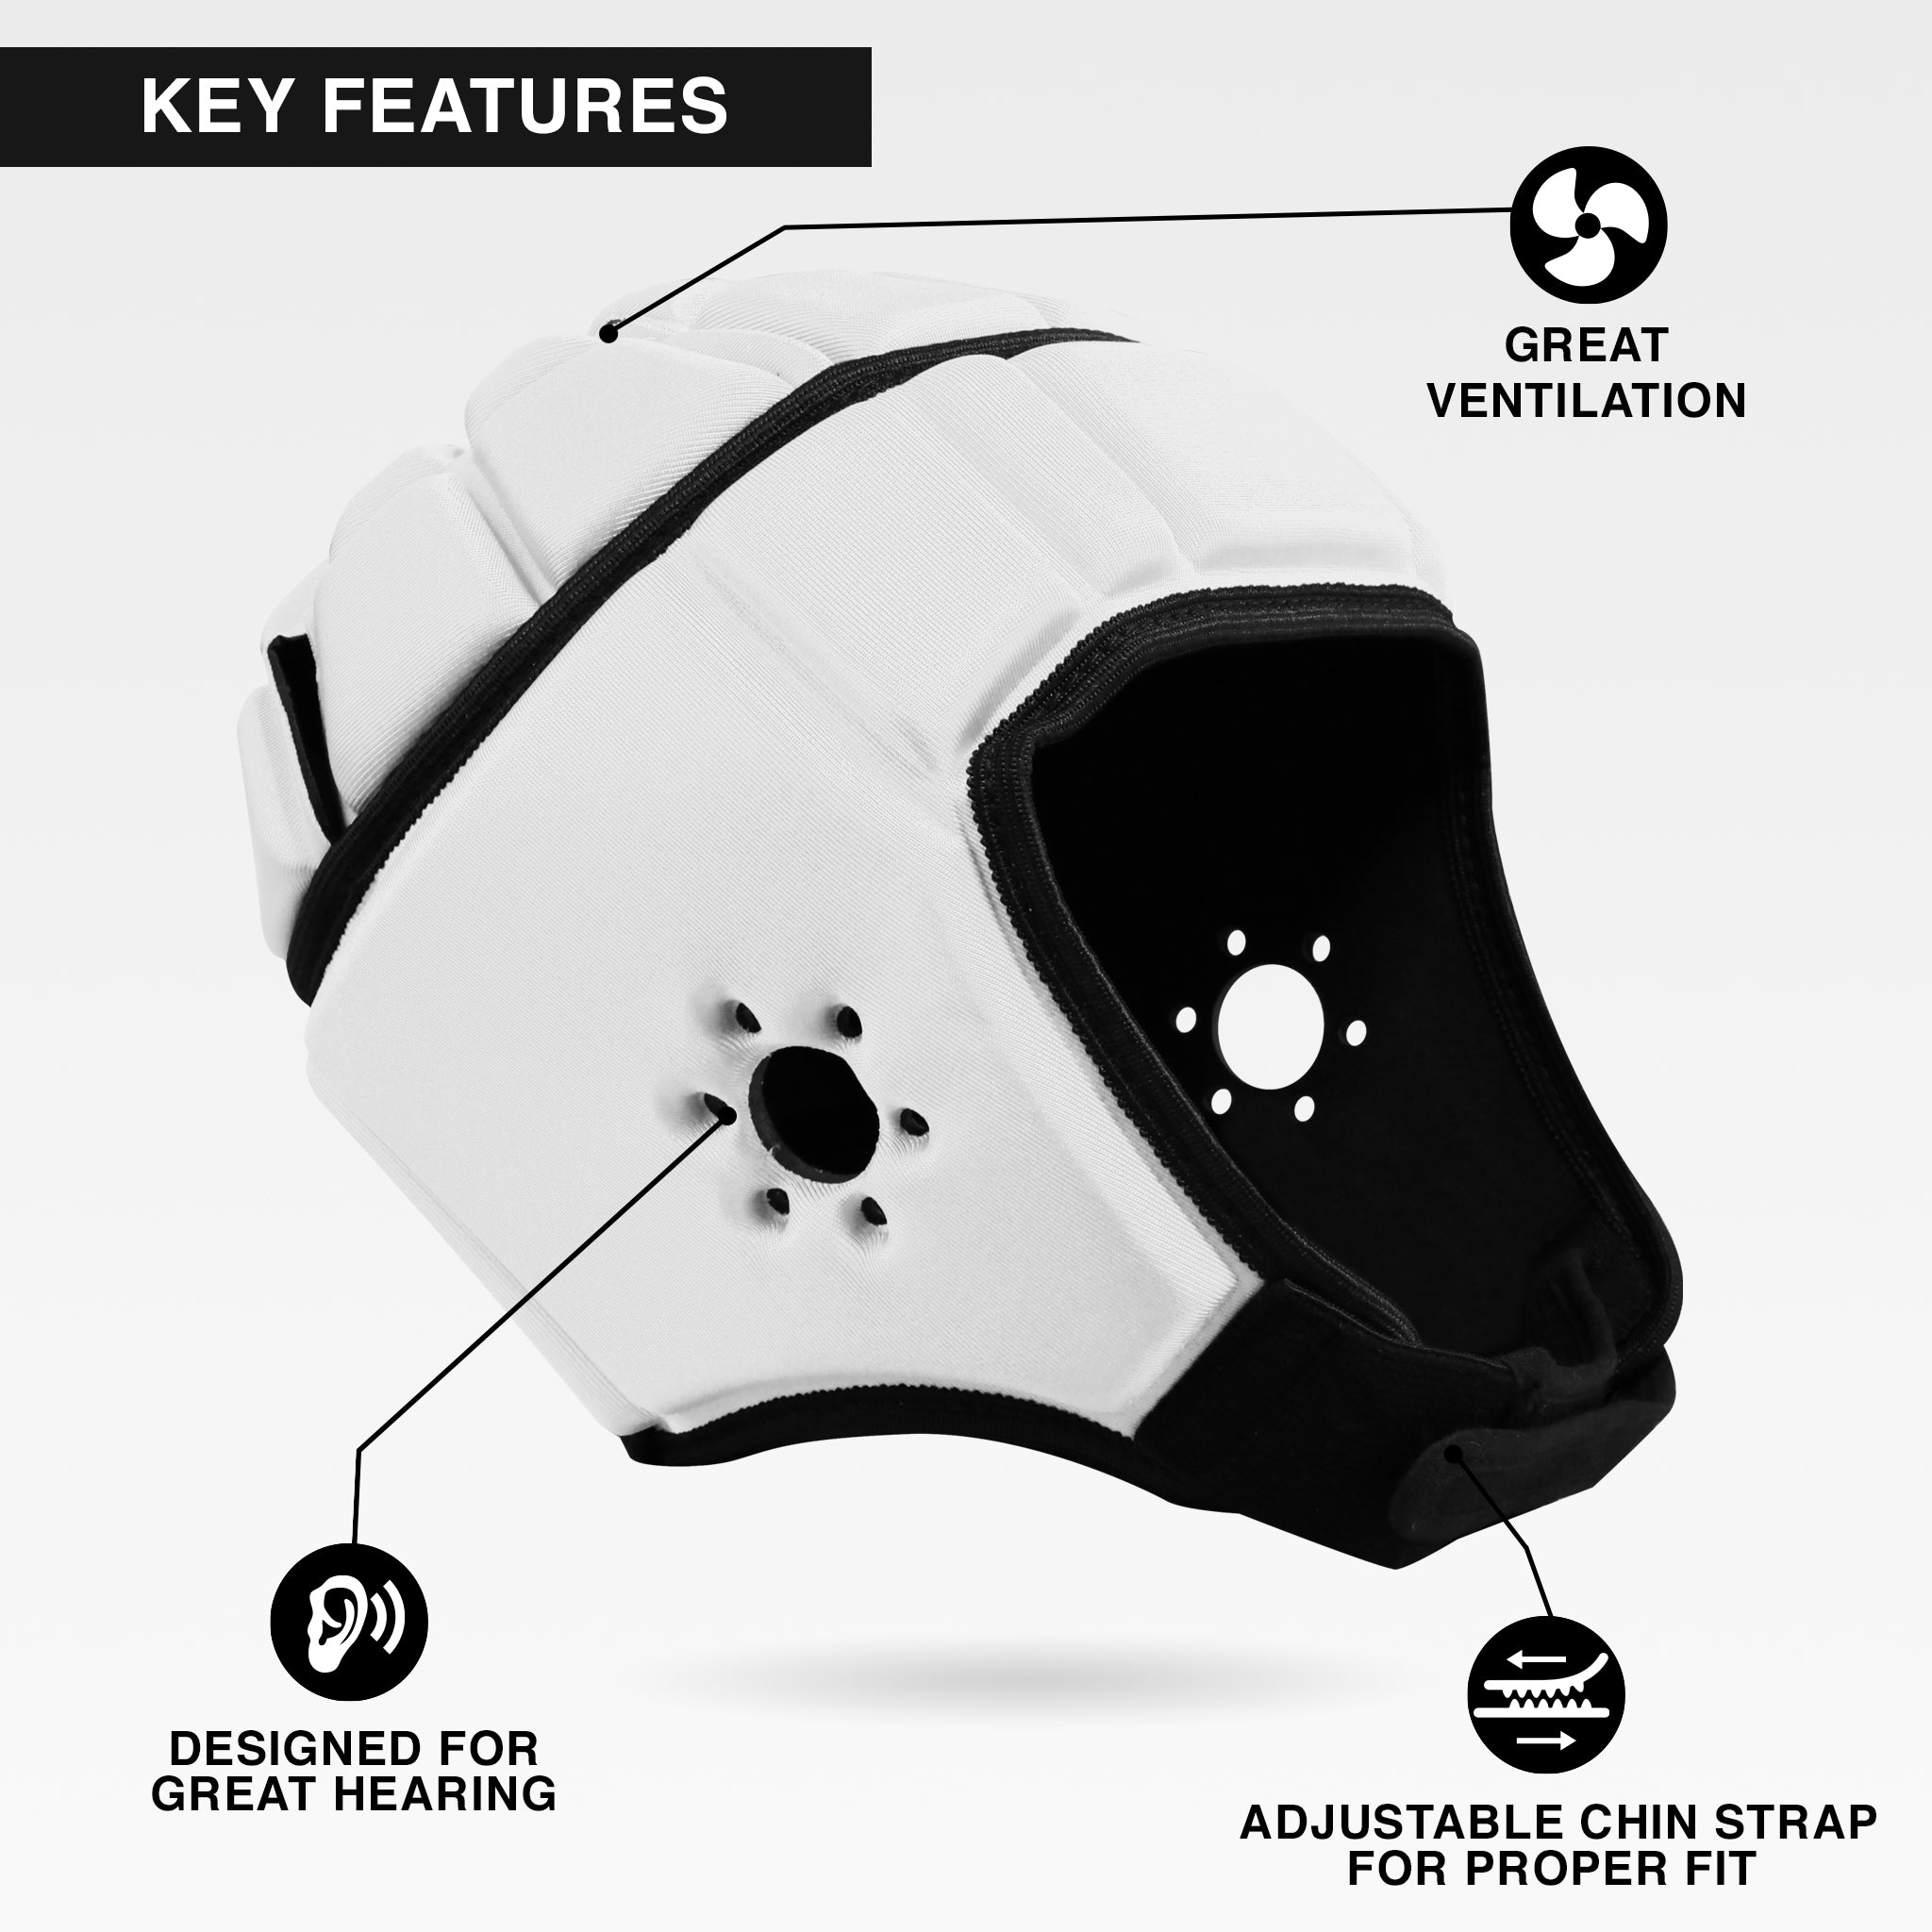 Soft Padded Helmet (Used) - EliteTek.com